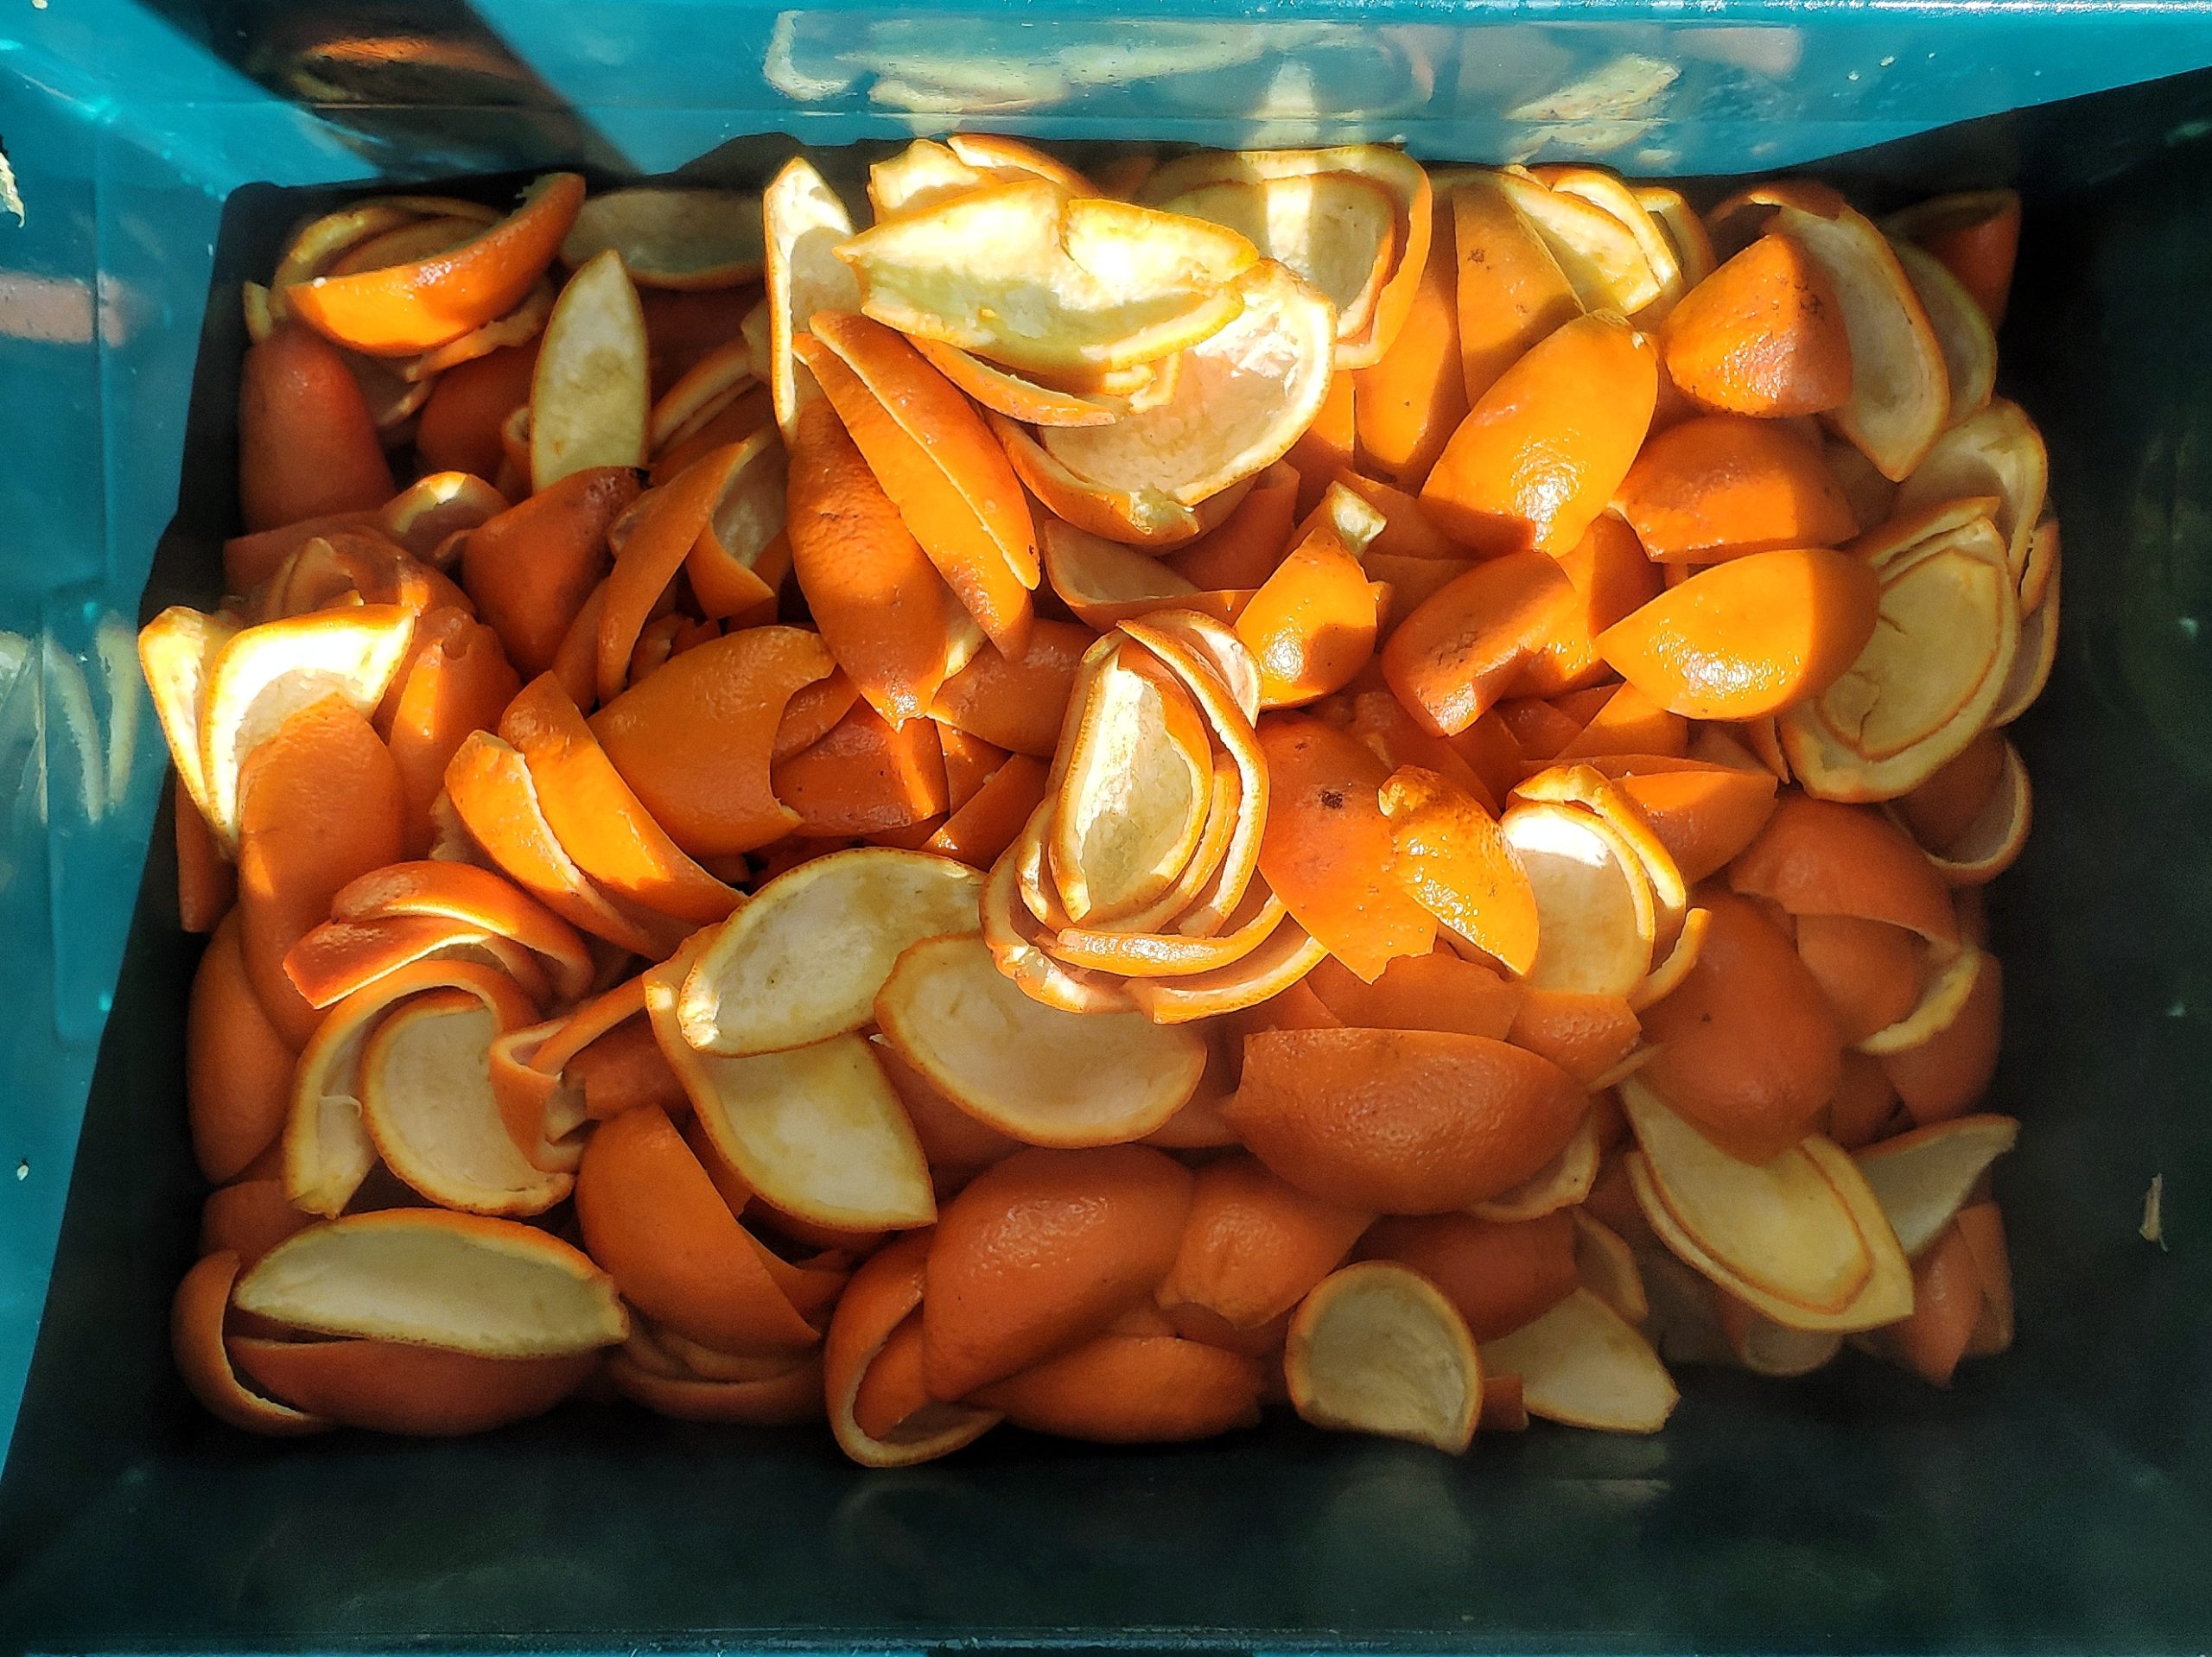 Tub of orange peels